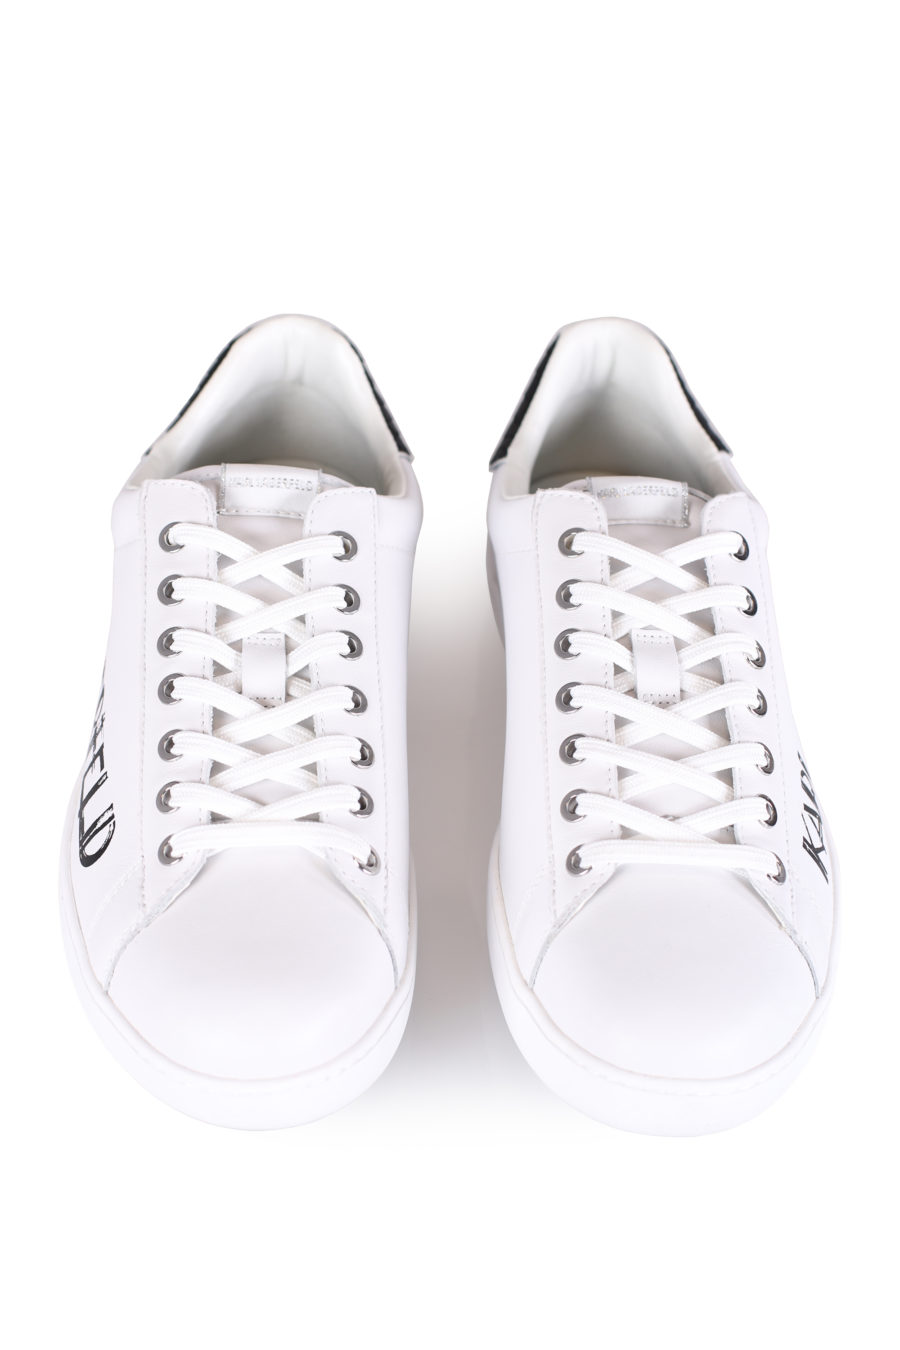 Zapatillas blancas con logotipo "Art" - IMG 0793